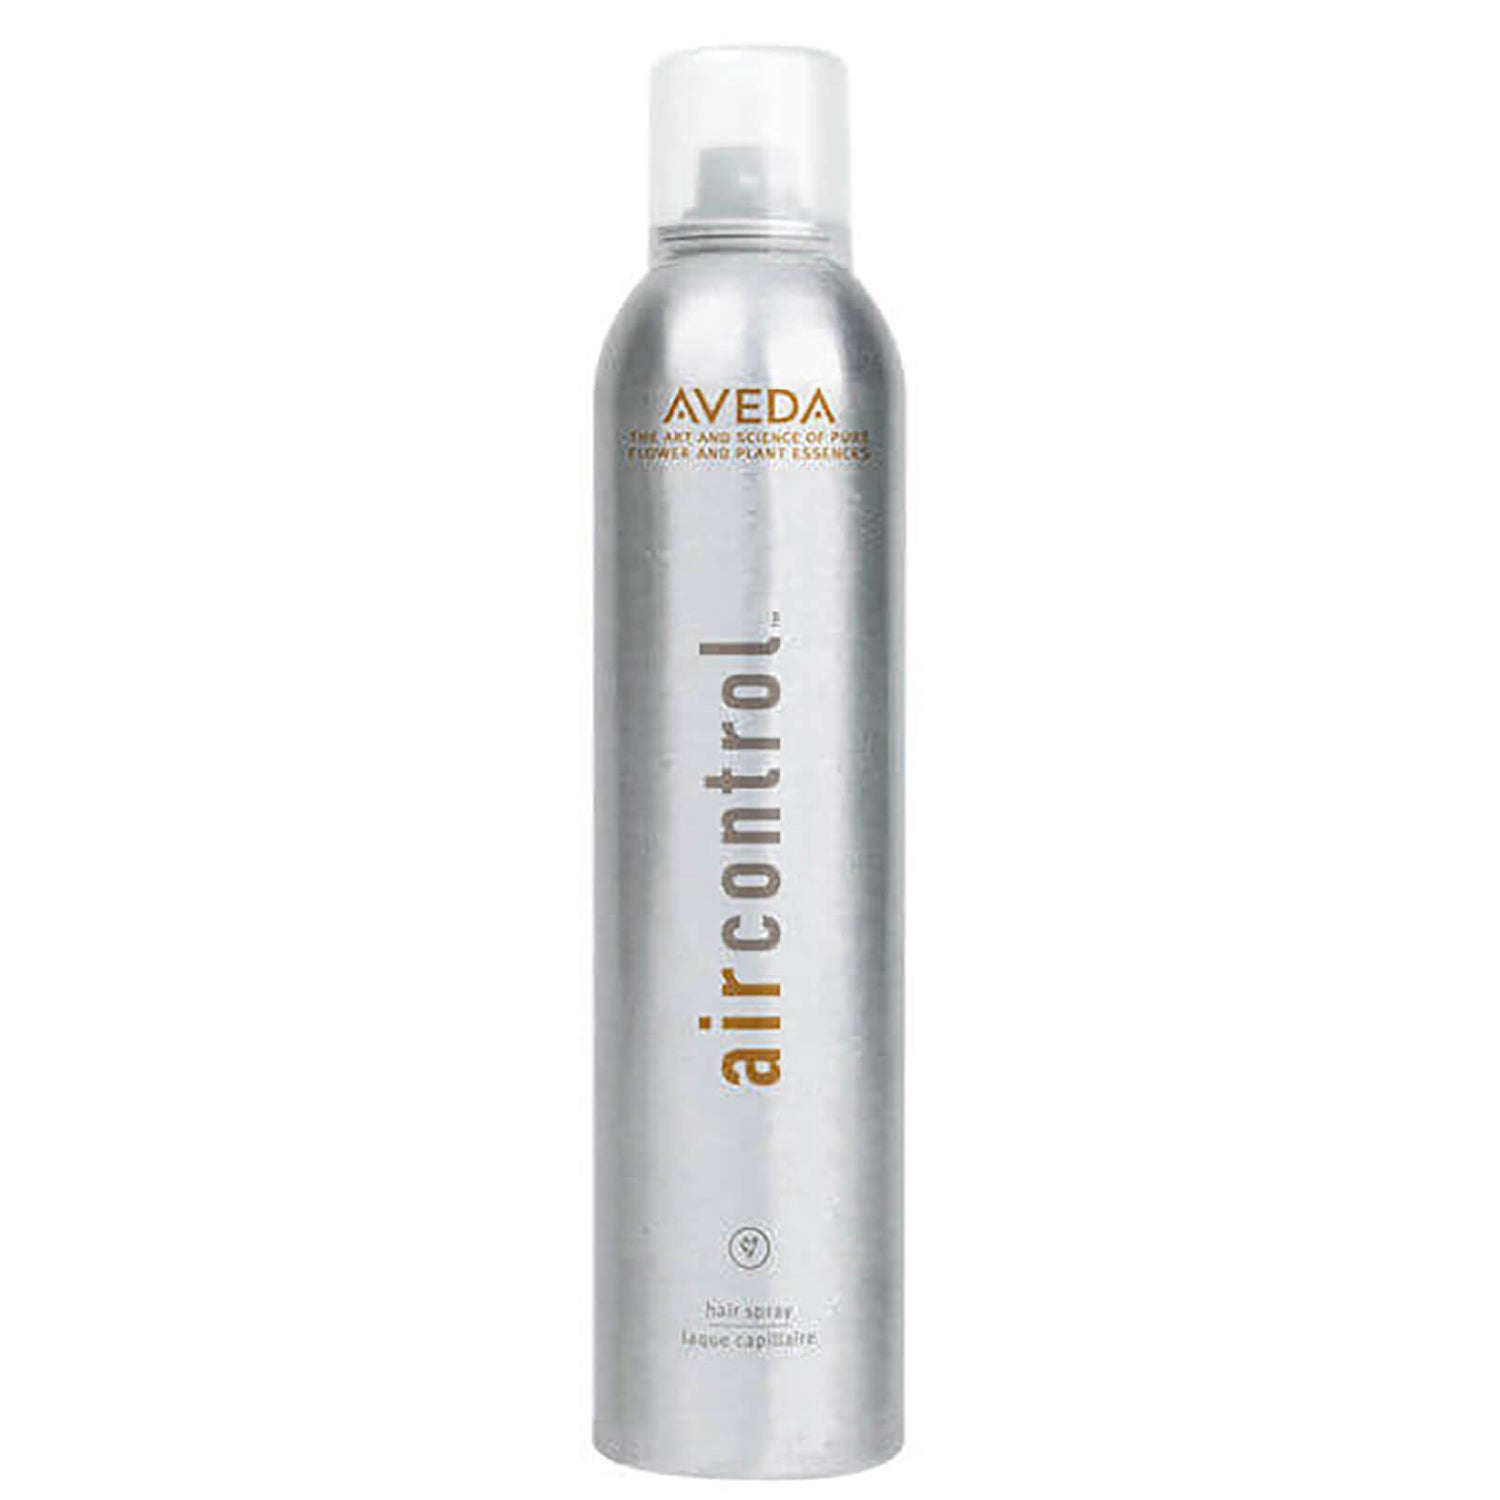 Aveda Air Control Hair Spray (300 ml)